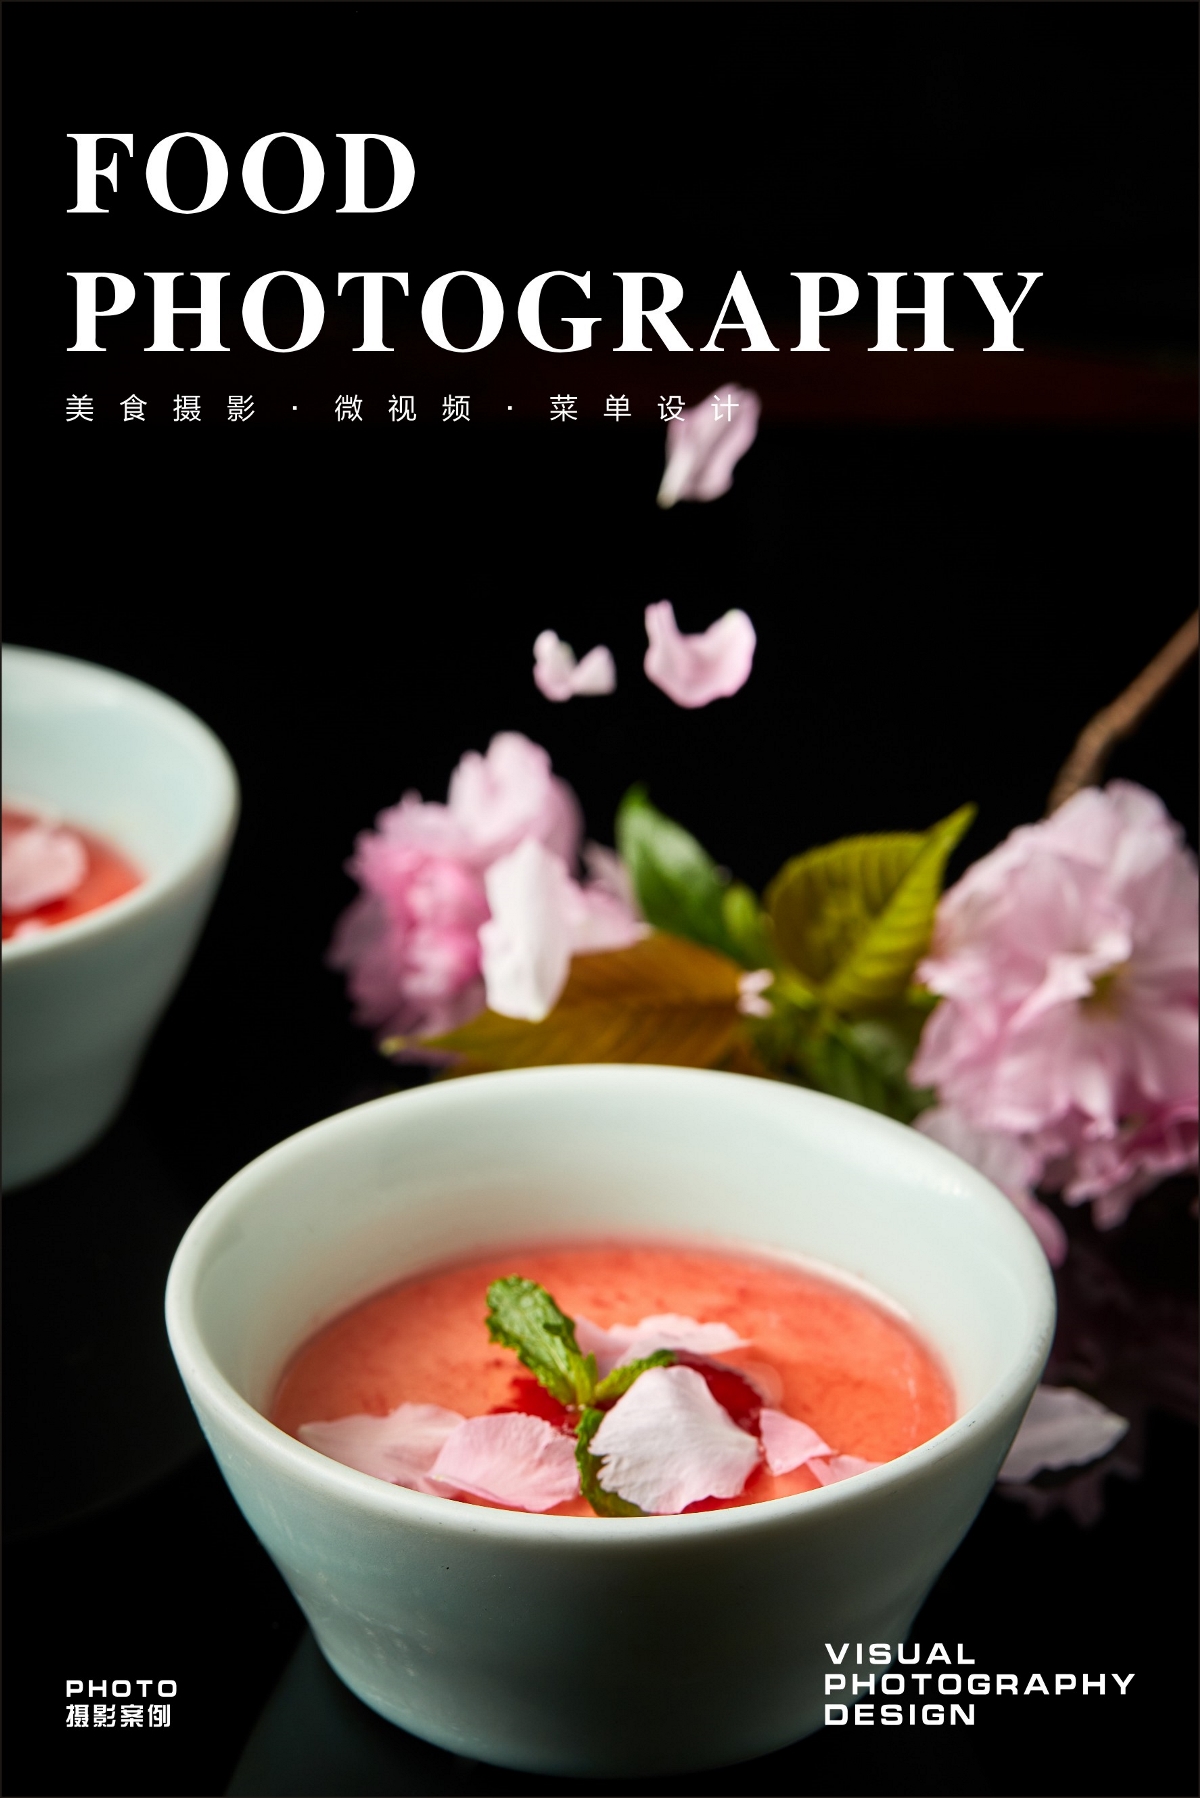 武汉美食摄影|美团首图拍摄|菜单设计|中餐摄影